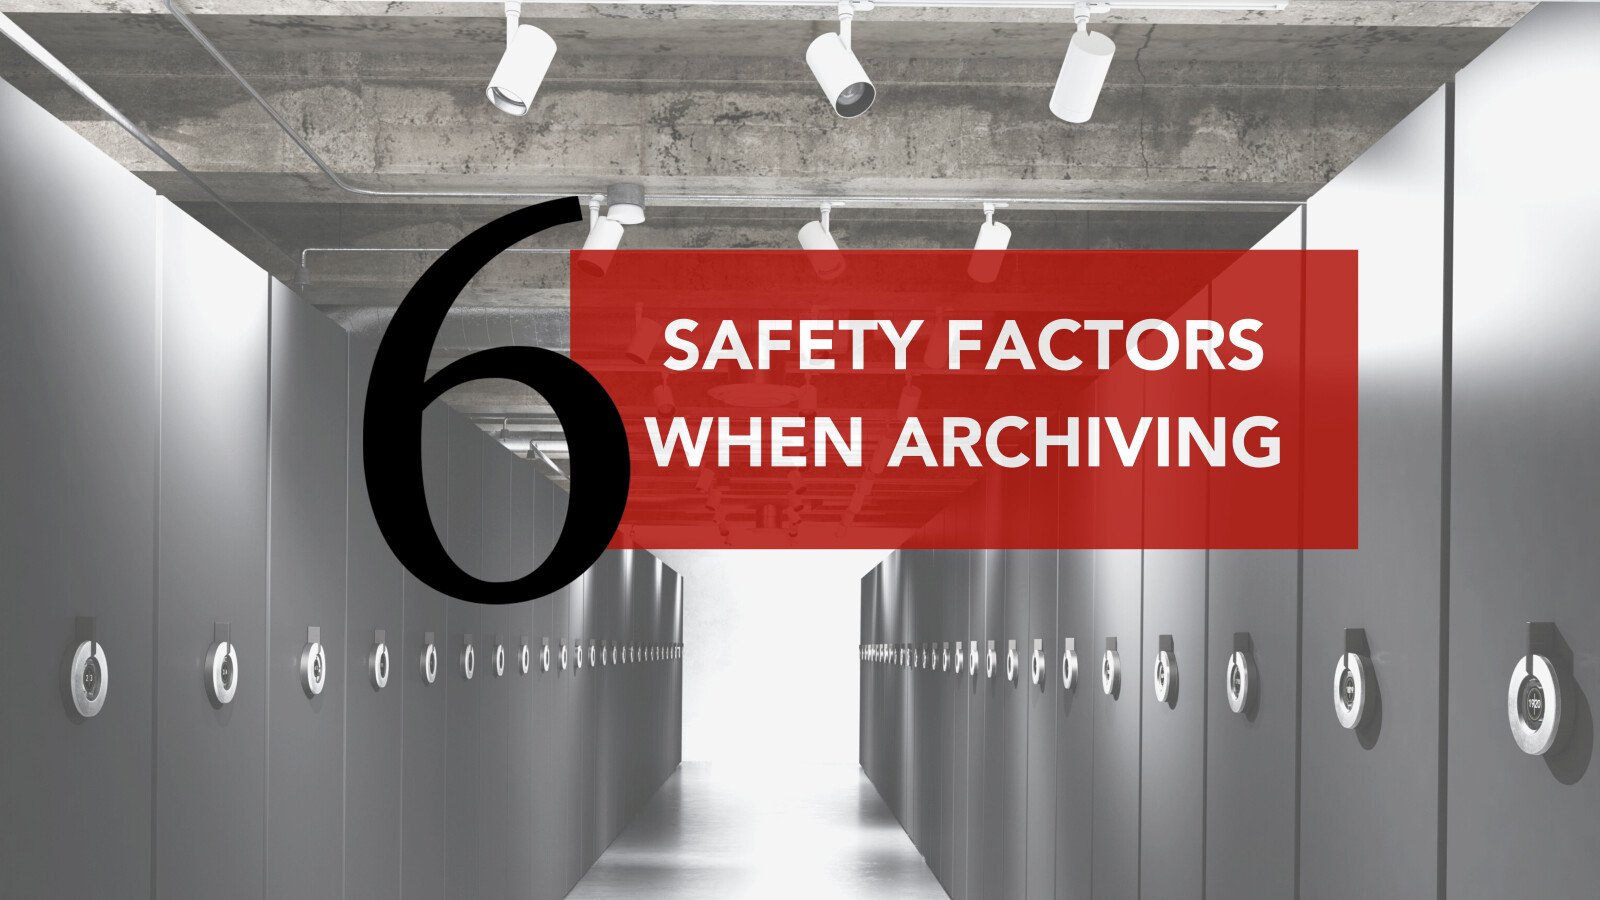 6 sikkerhedsfaktorer, der bør overvejes ved arkivering af dokumenter og samlinger